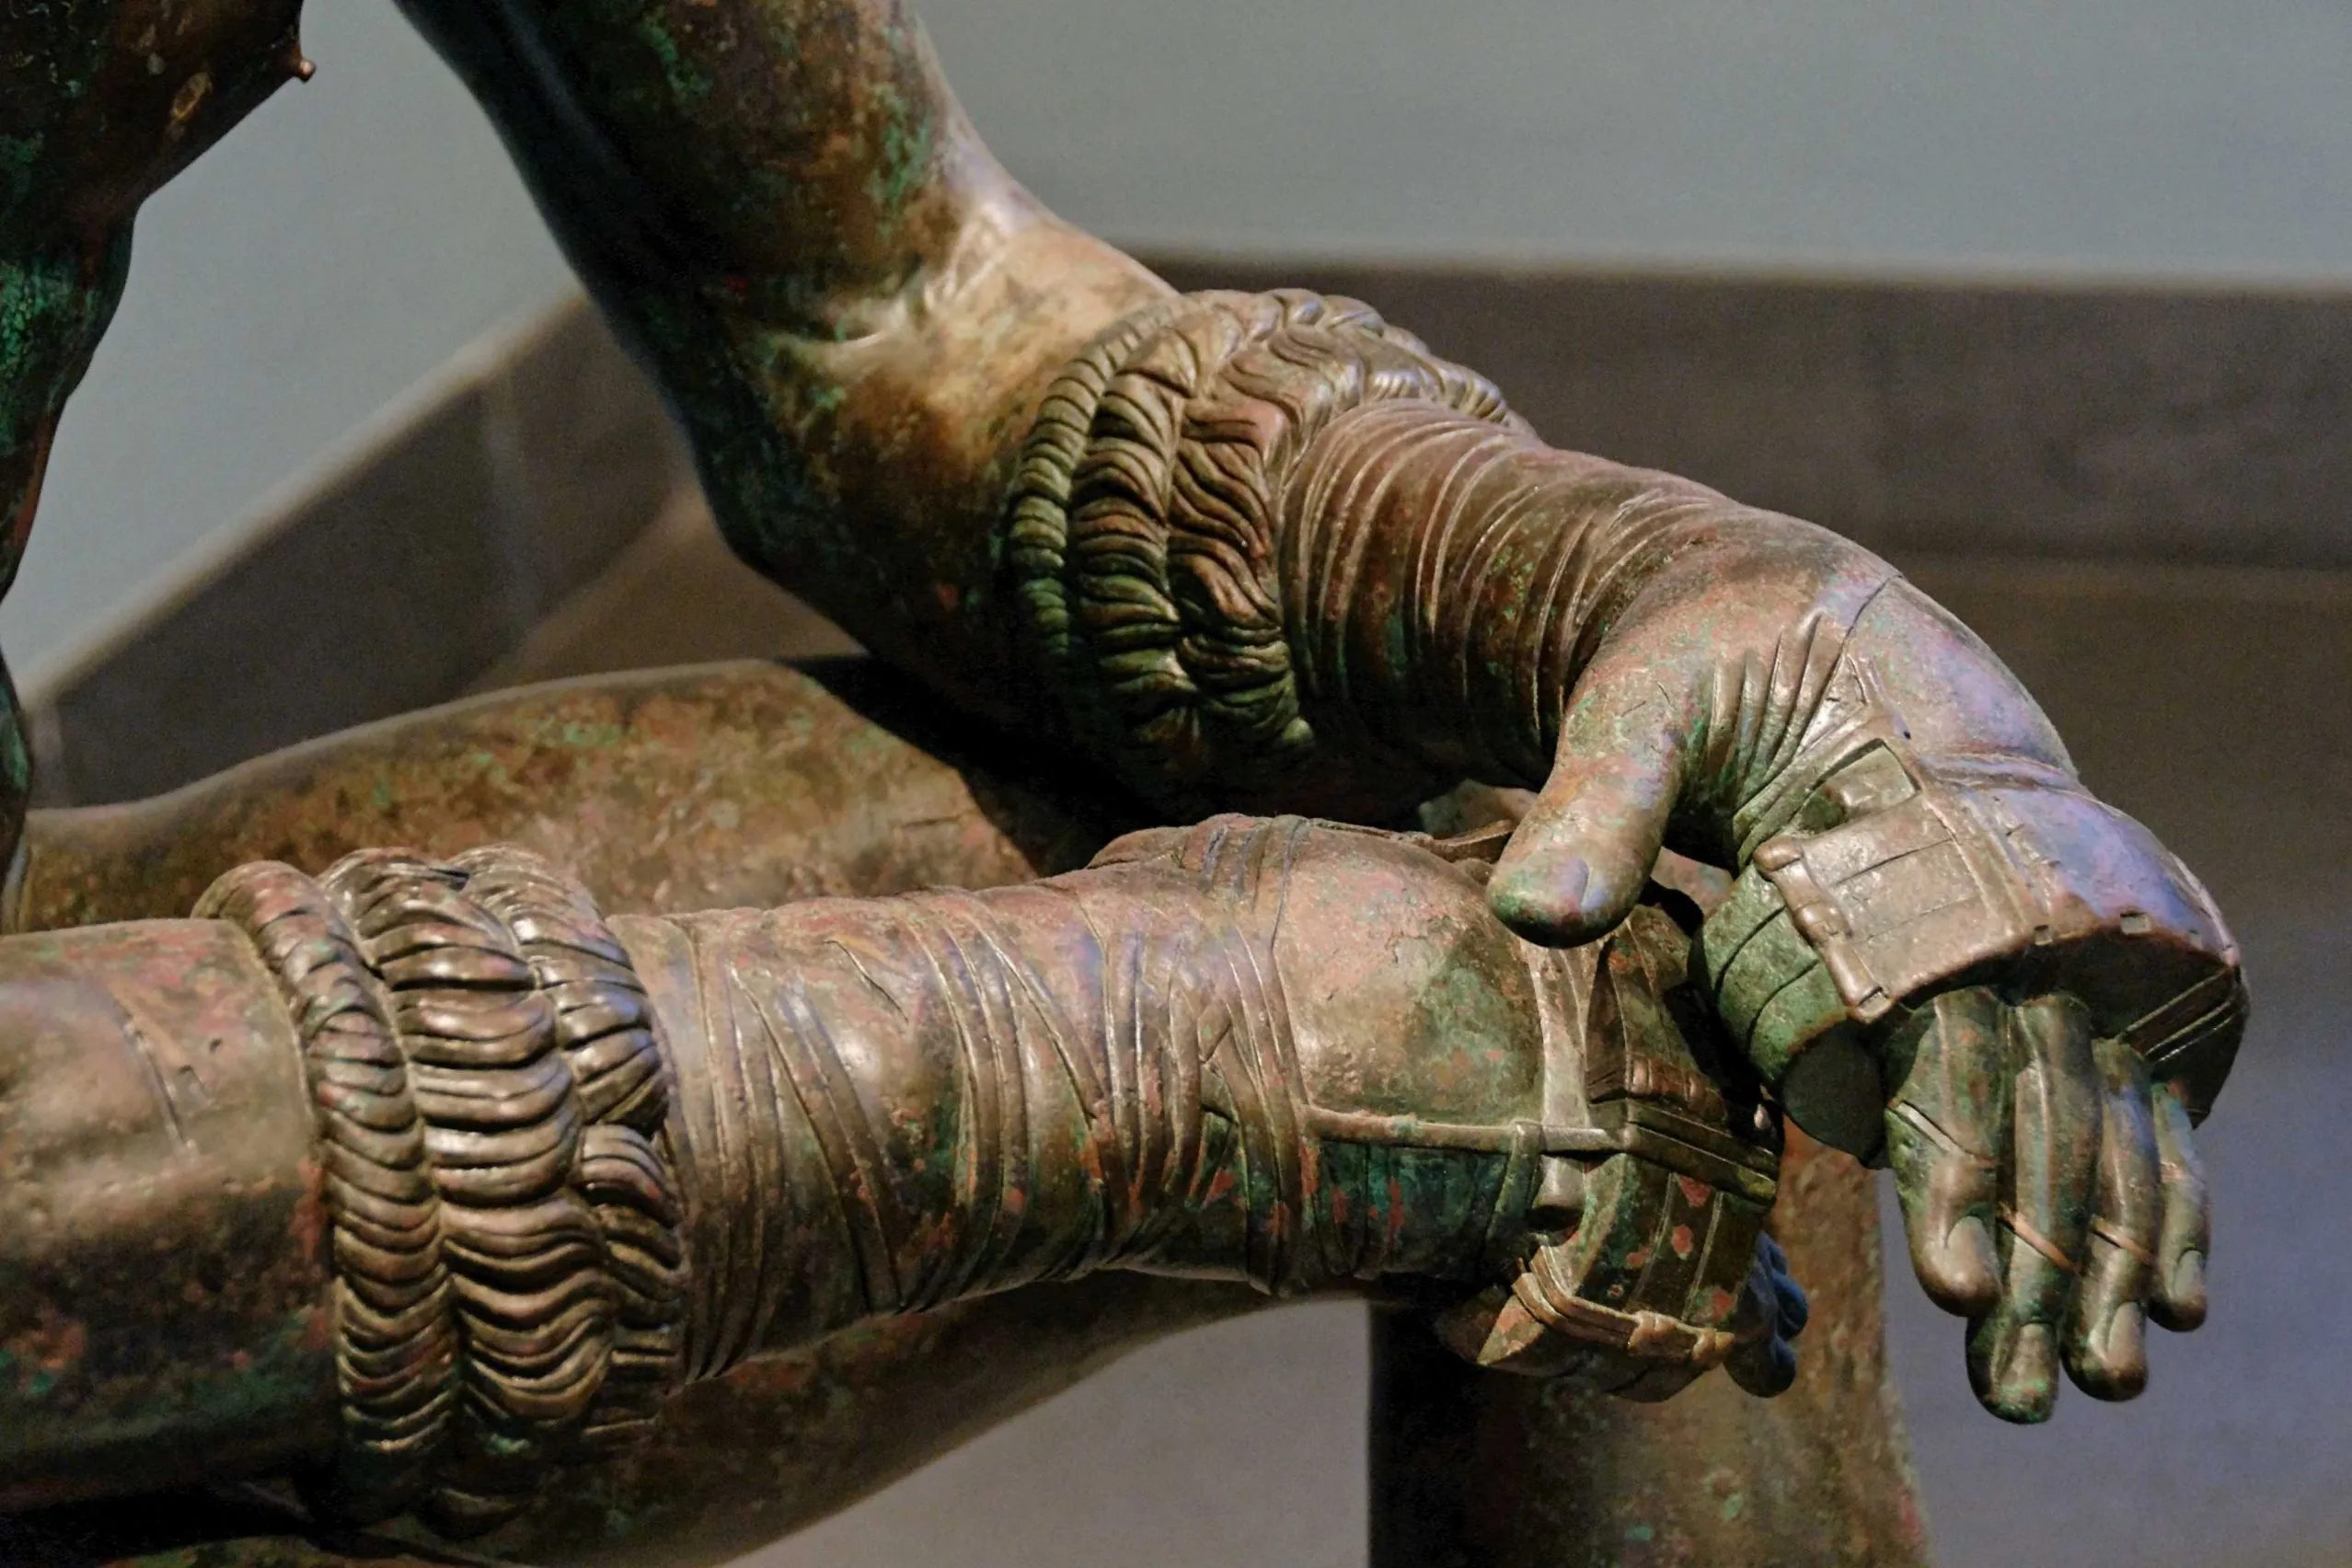 Pymachia: Võ thuật đối kháng chết chóc của Hy Lạp cổ đại